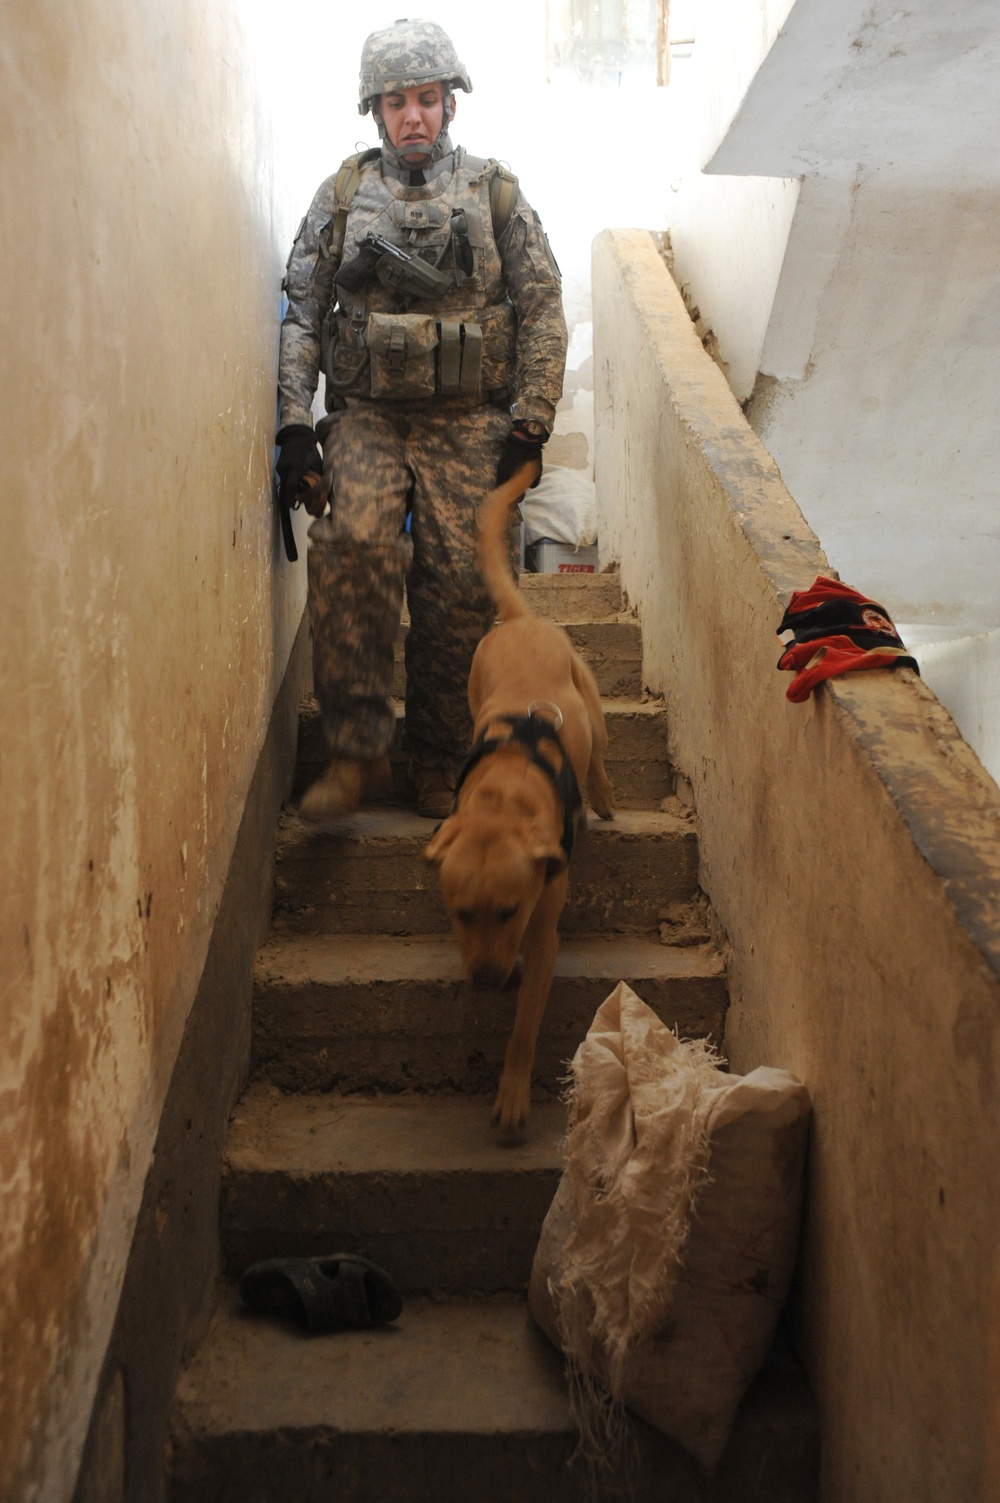 Patrol in Abu Ghraib, Iraq